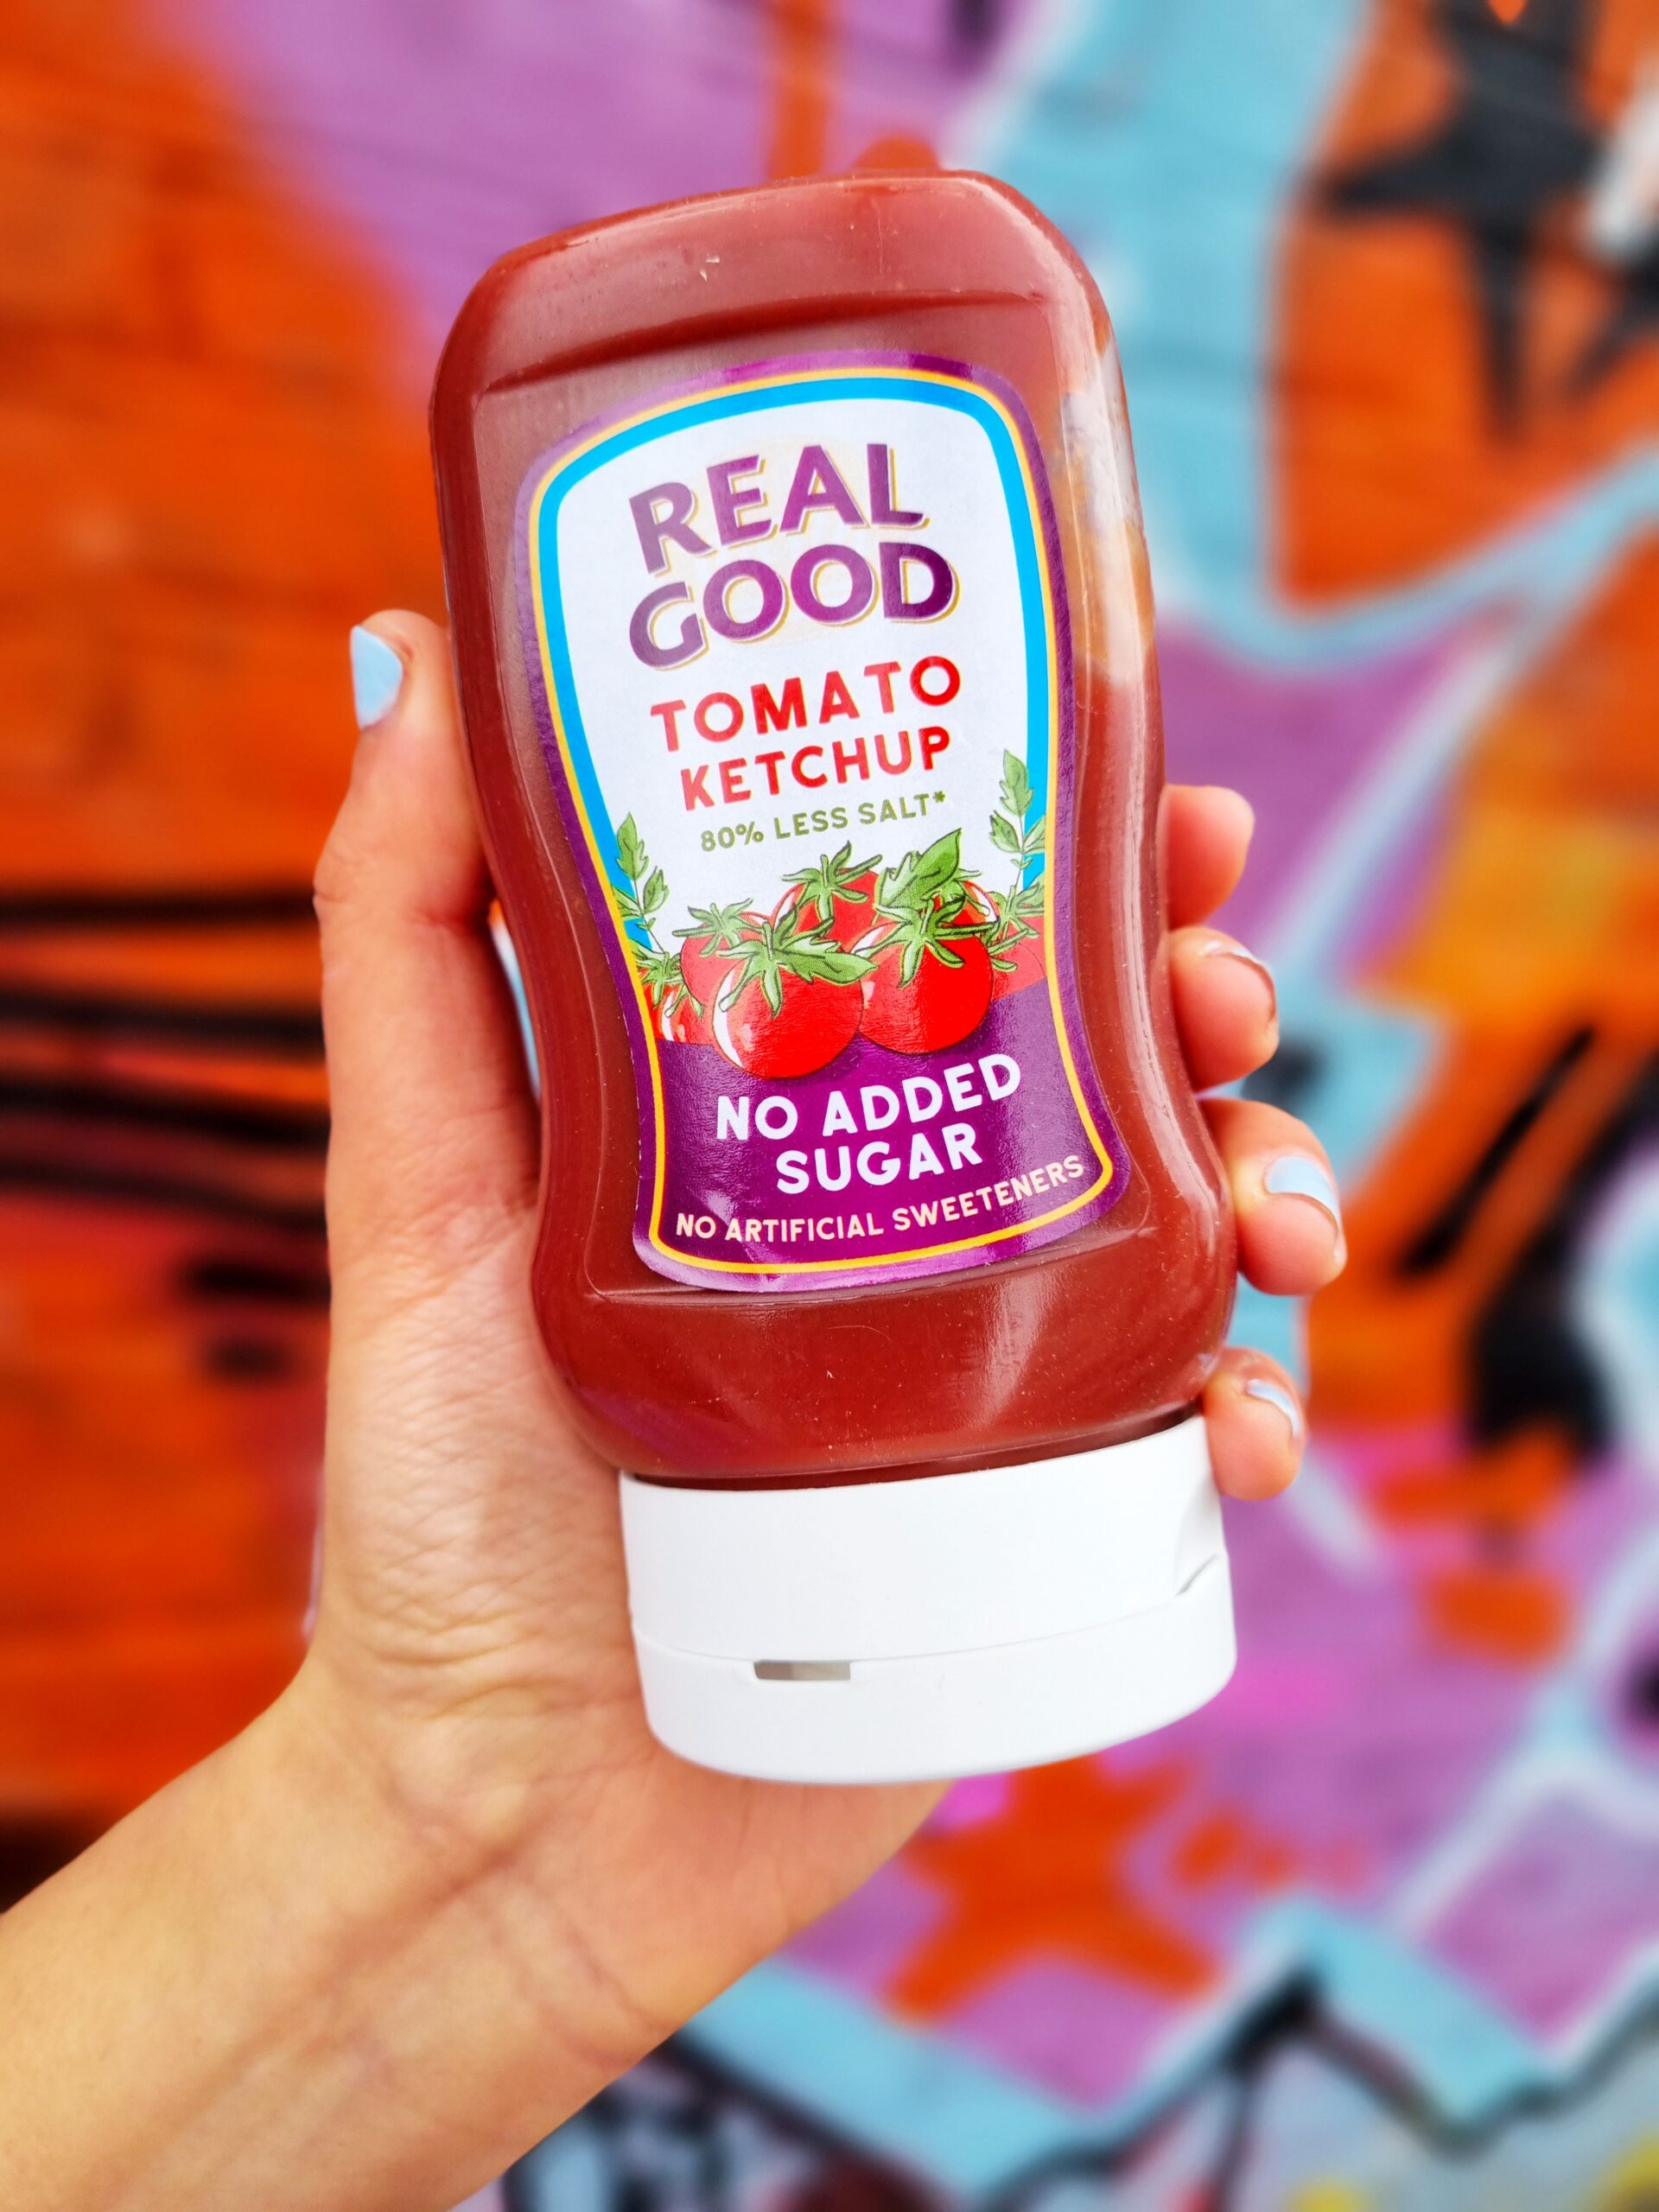 <img src="real good.jpg" alt="real good tomato ketchup vegan"/>